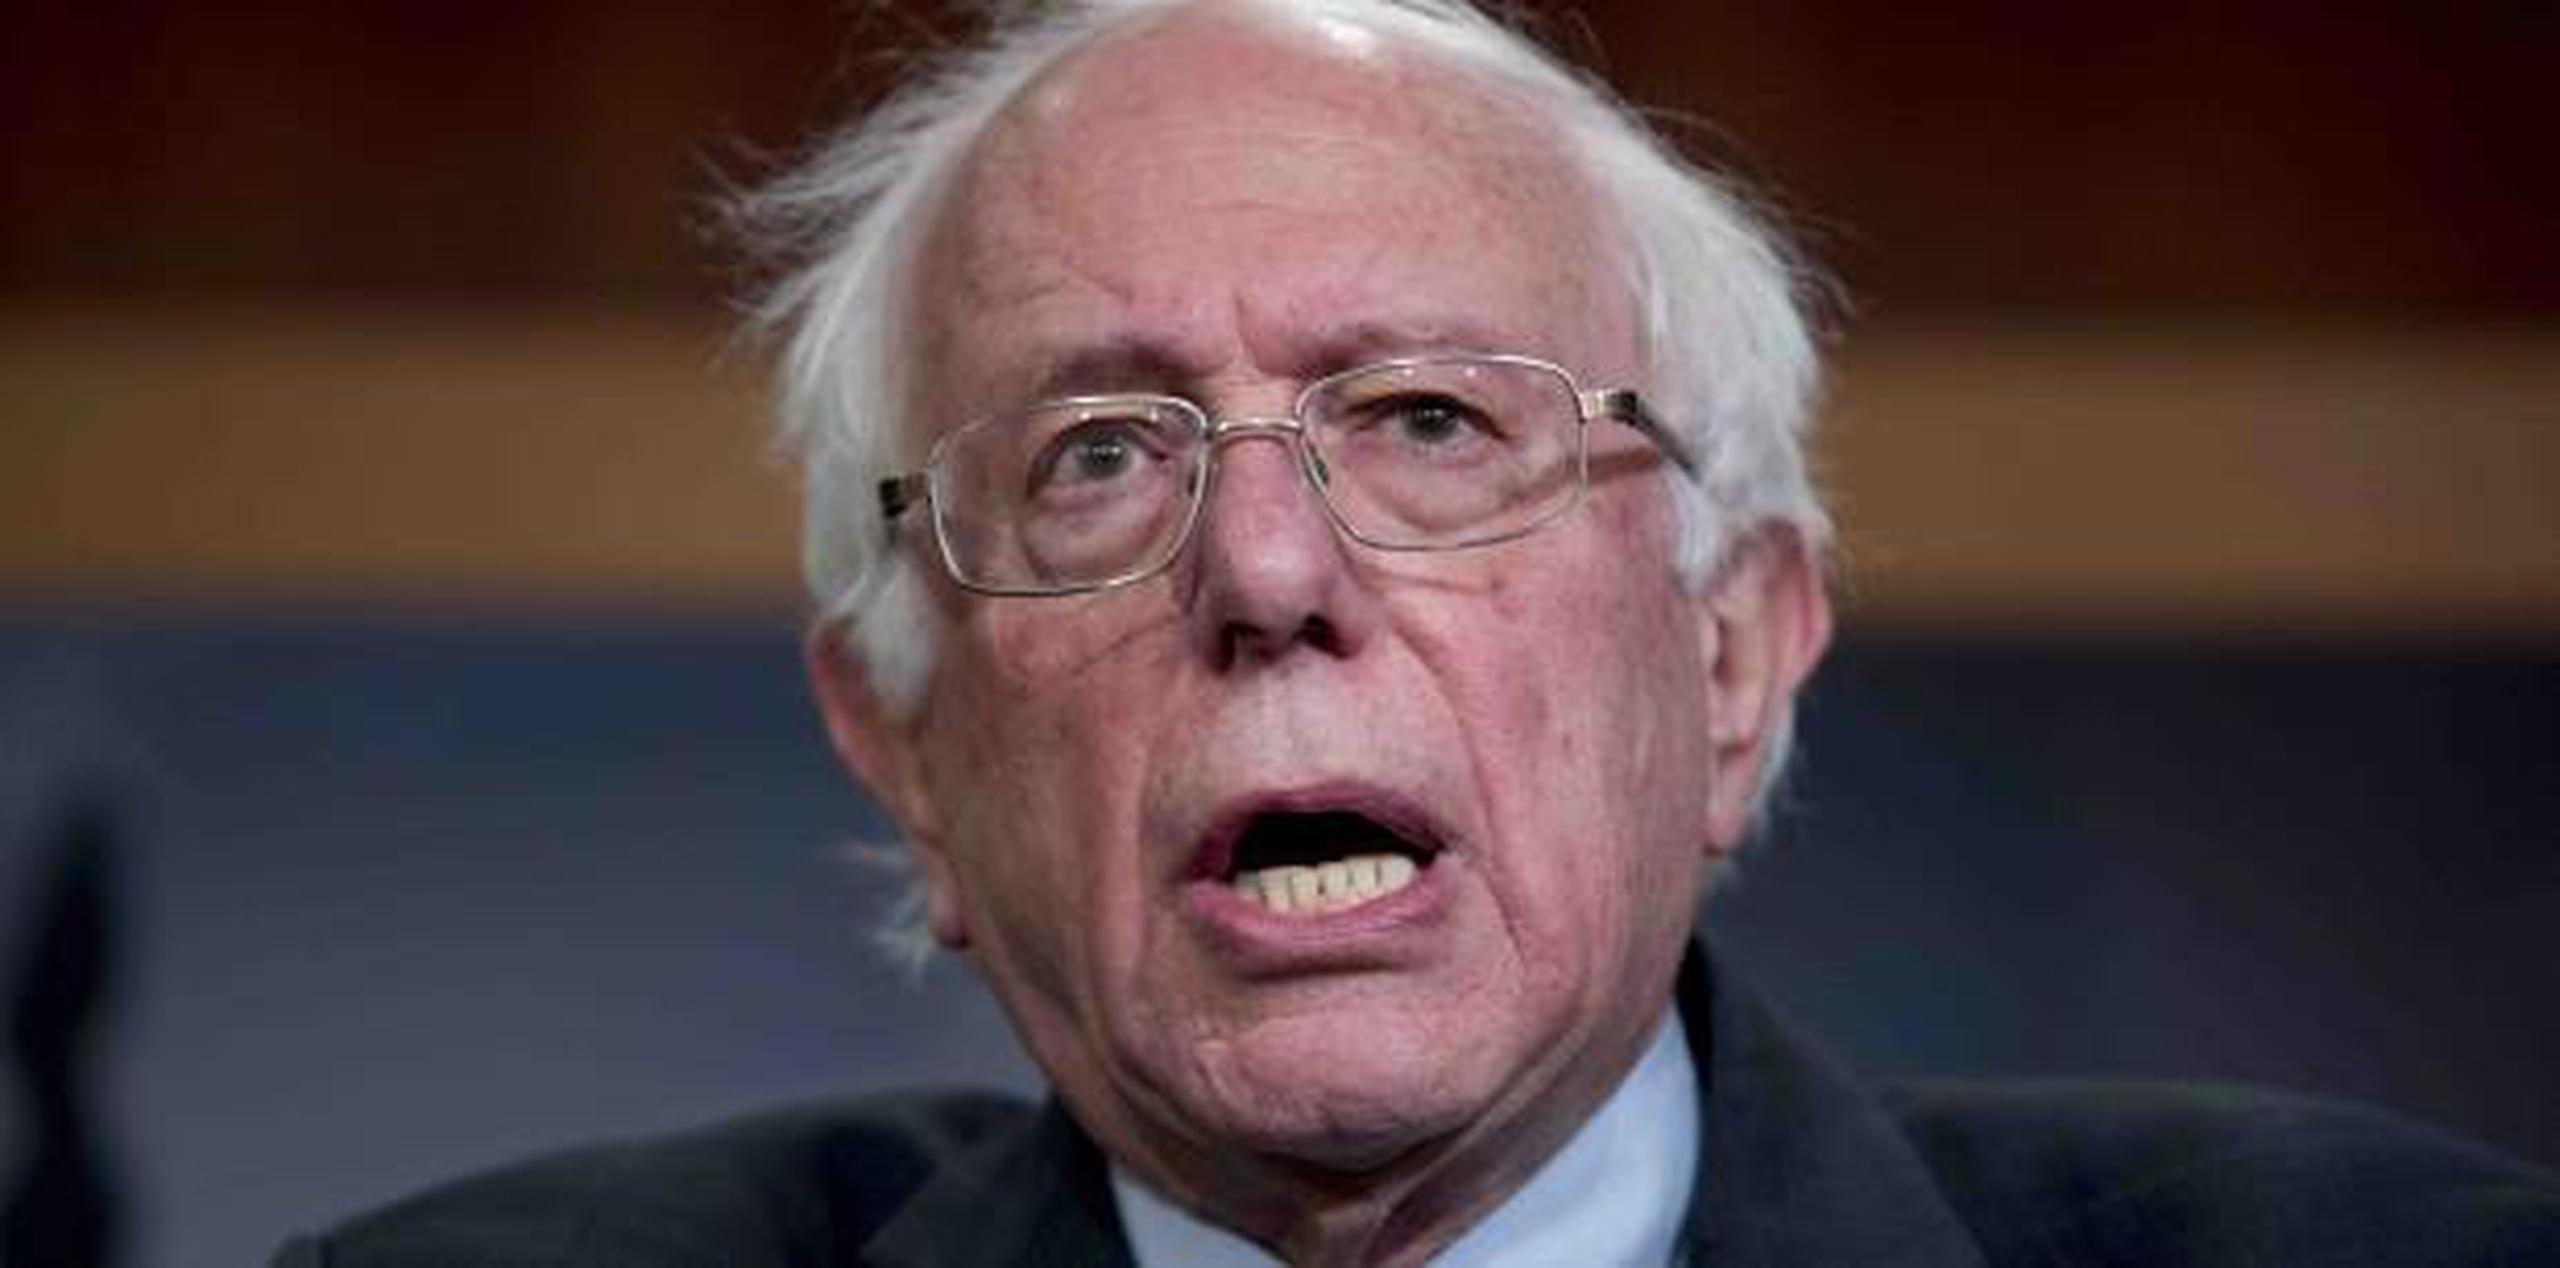 "El actual ocupante de la presidencia es una vergüenza para el país", dijo Sanders. (AP)